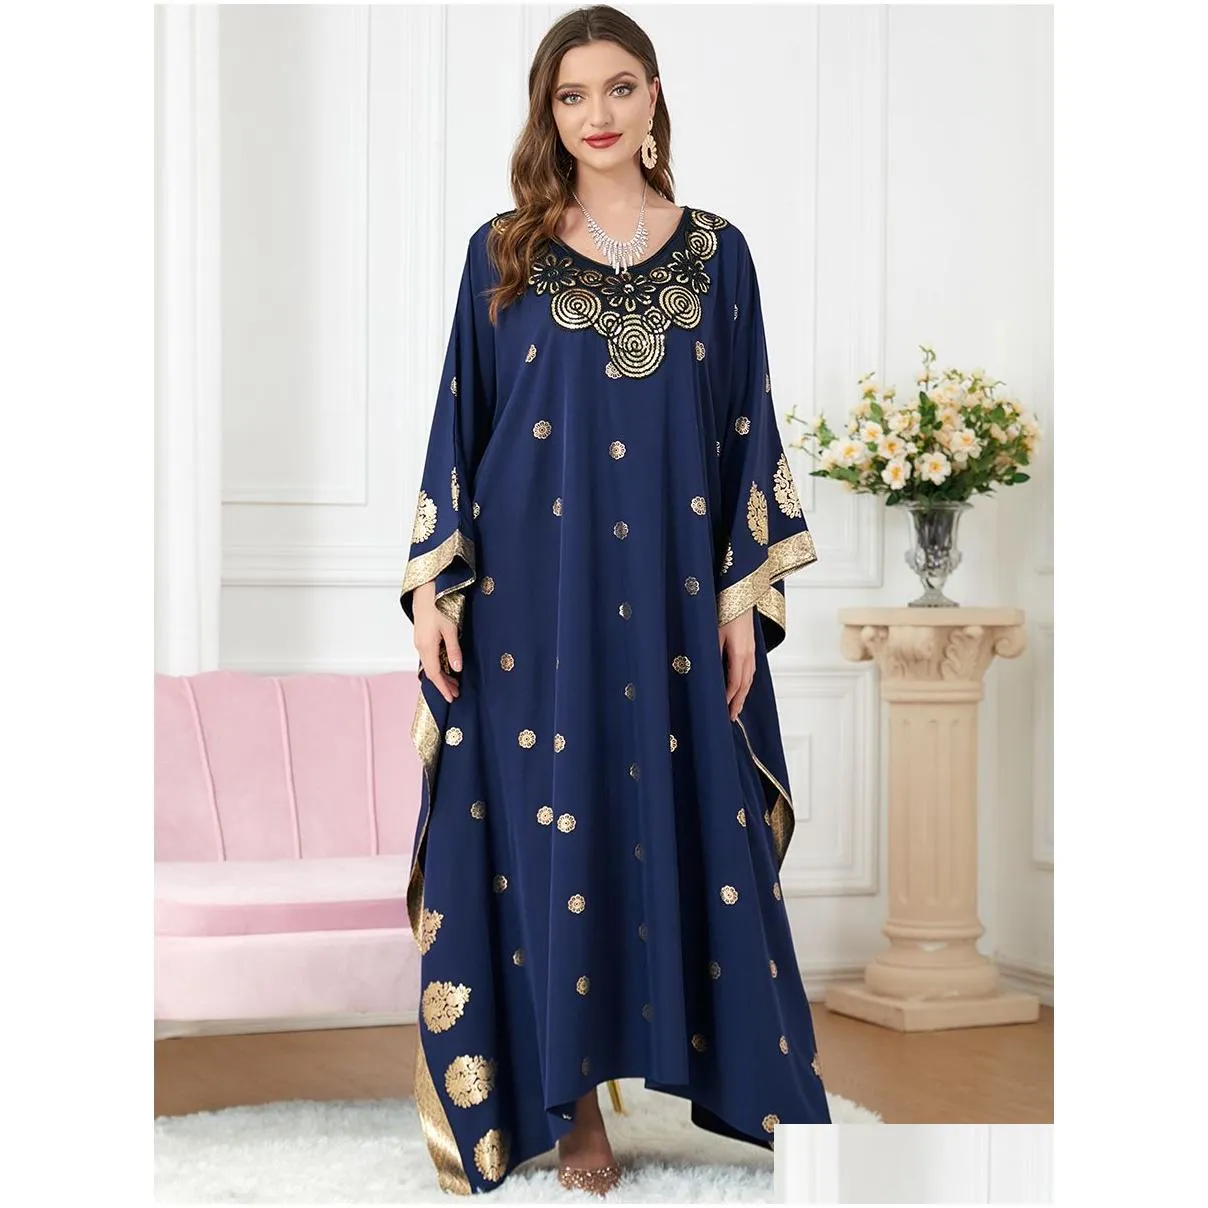 middle eastern muslim clothing women blue bronzing printed bat sleeve loose casual dress robe party abaya vestidos musulmanes moroccan kaftan